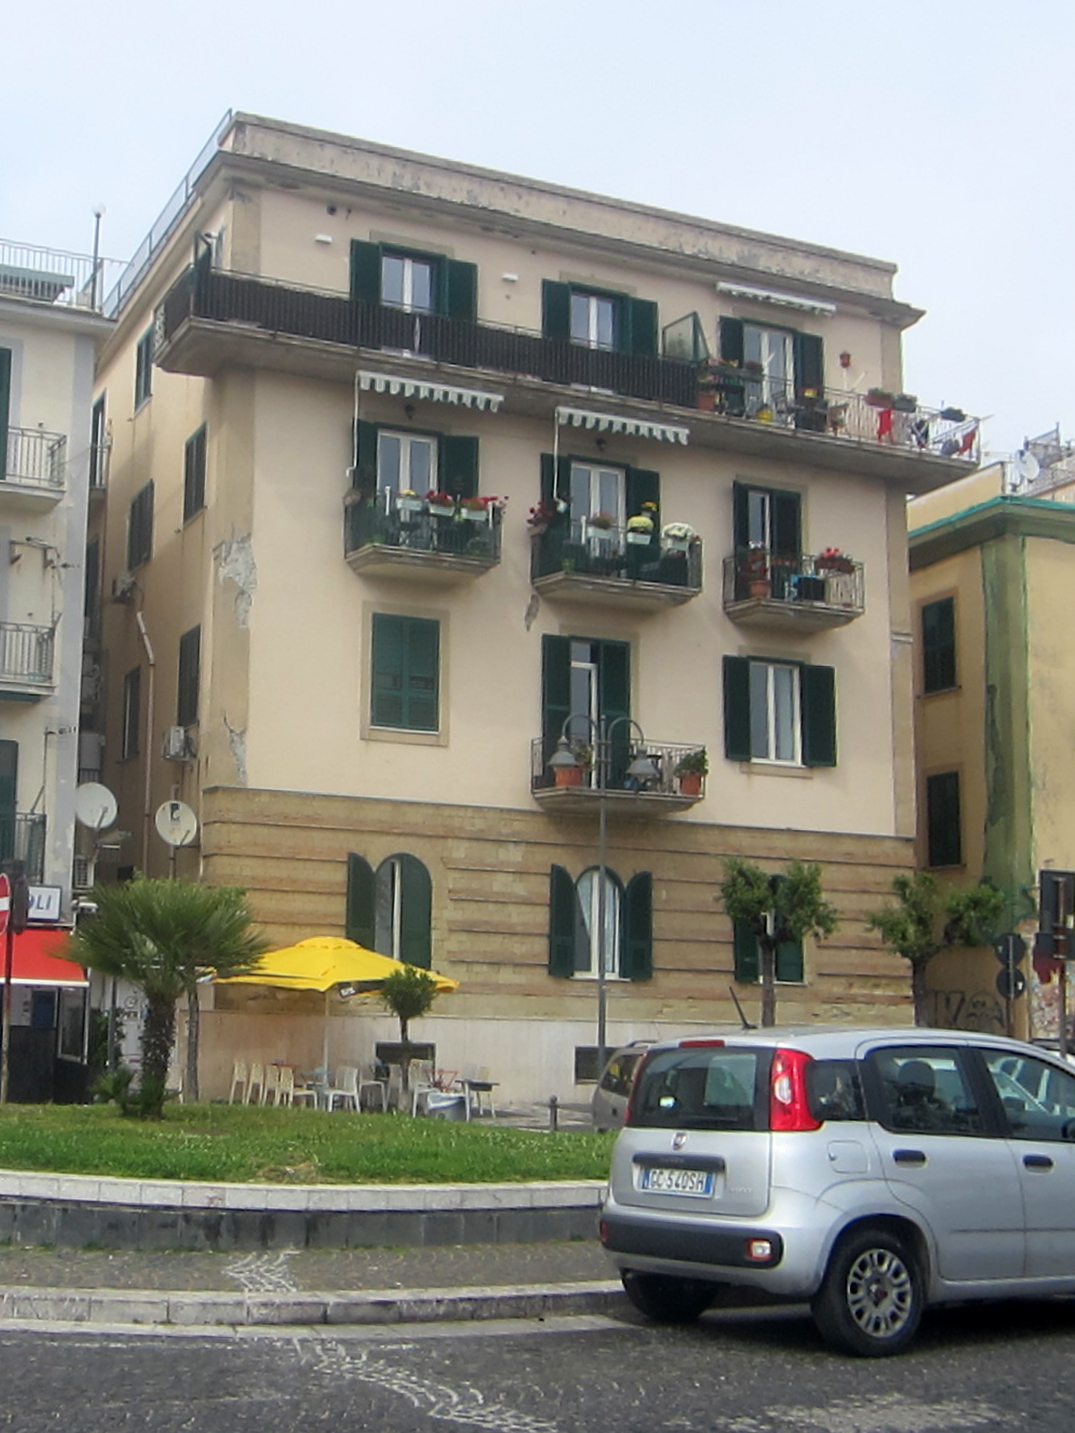 [Palazzo in Via Vincenzo Barletta, 1-3-5] (palazzo, civico) - Pozzuoli (NA) 